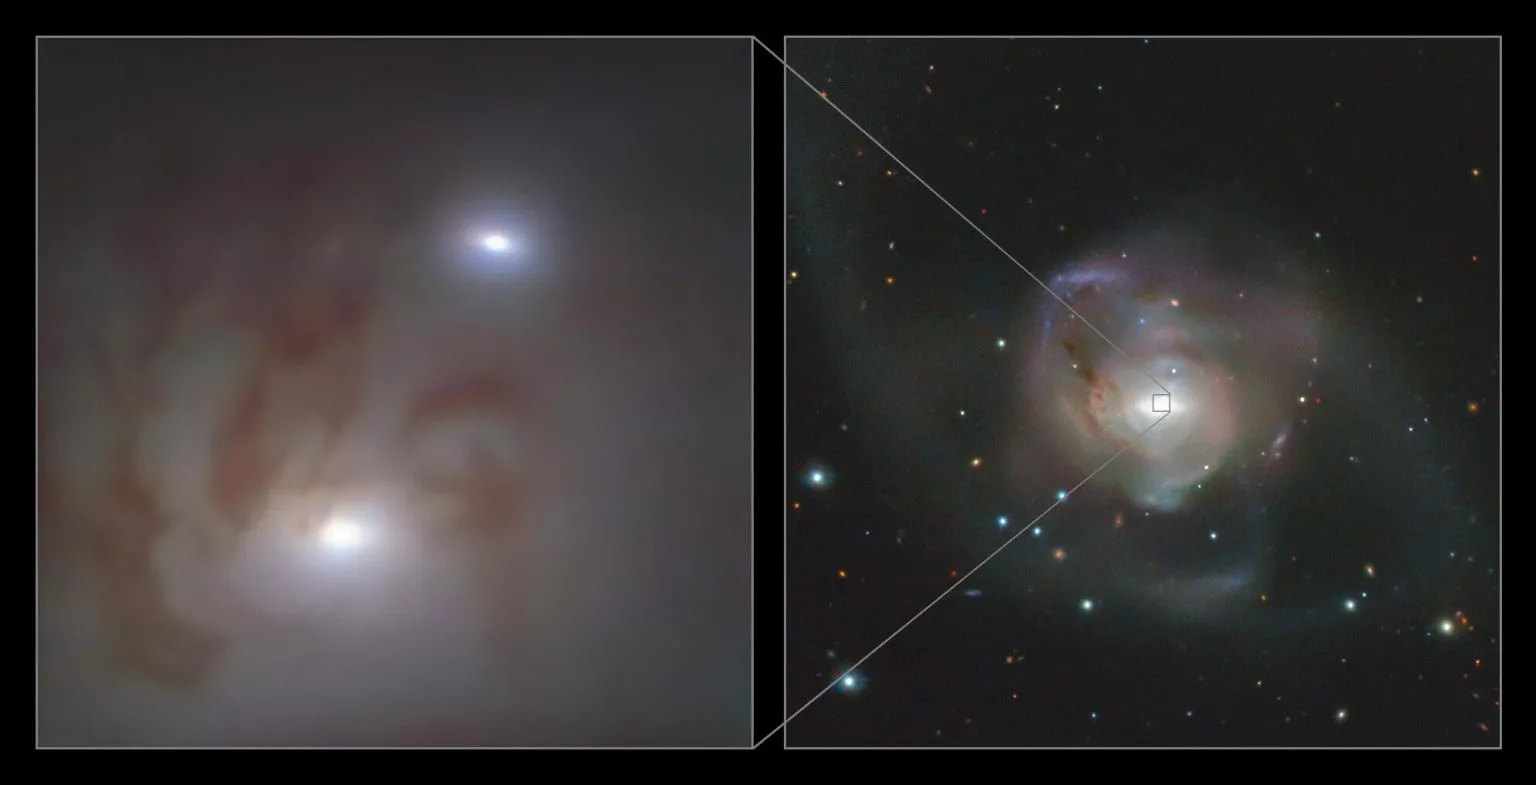 宝瓶座NGC 7727星系